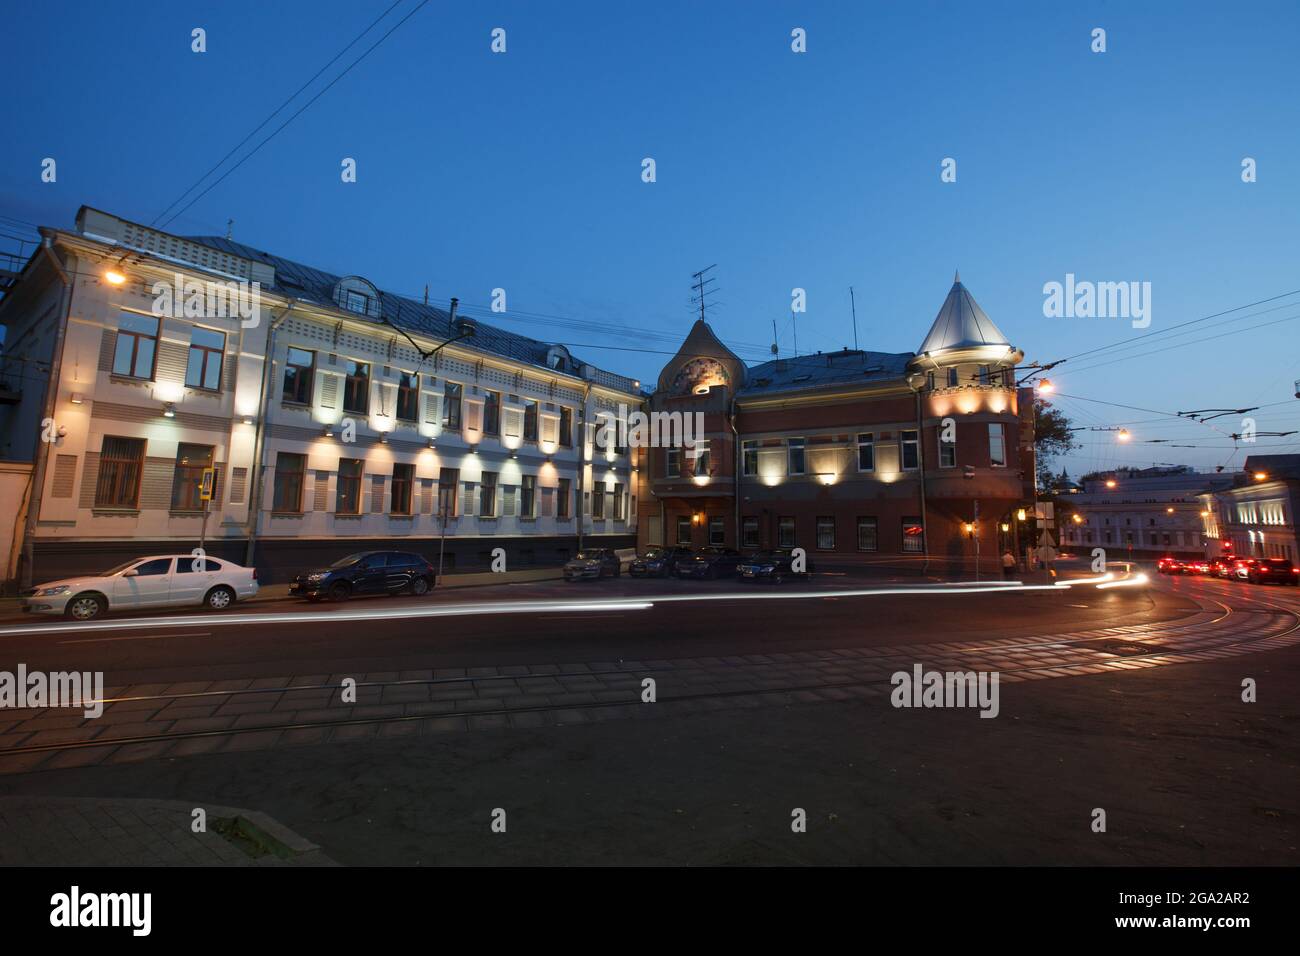 Moscou, Russie - juillet 27 2014 : bâtiments historiques dans le centre de Moscou la nuit. Hôtel particulier sur le boulevard Yauza. Rails de tram et traces légères au premier plan Banque D'Images